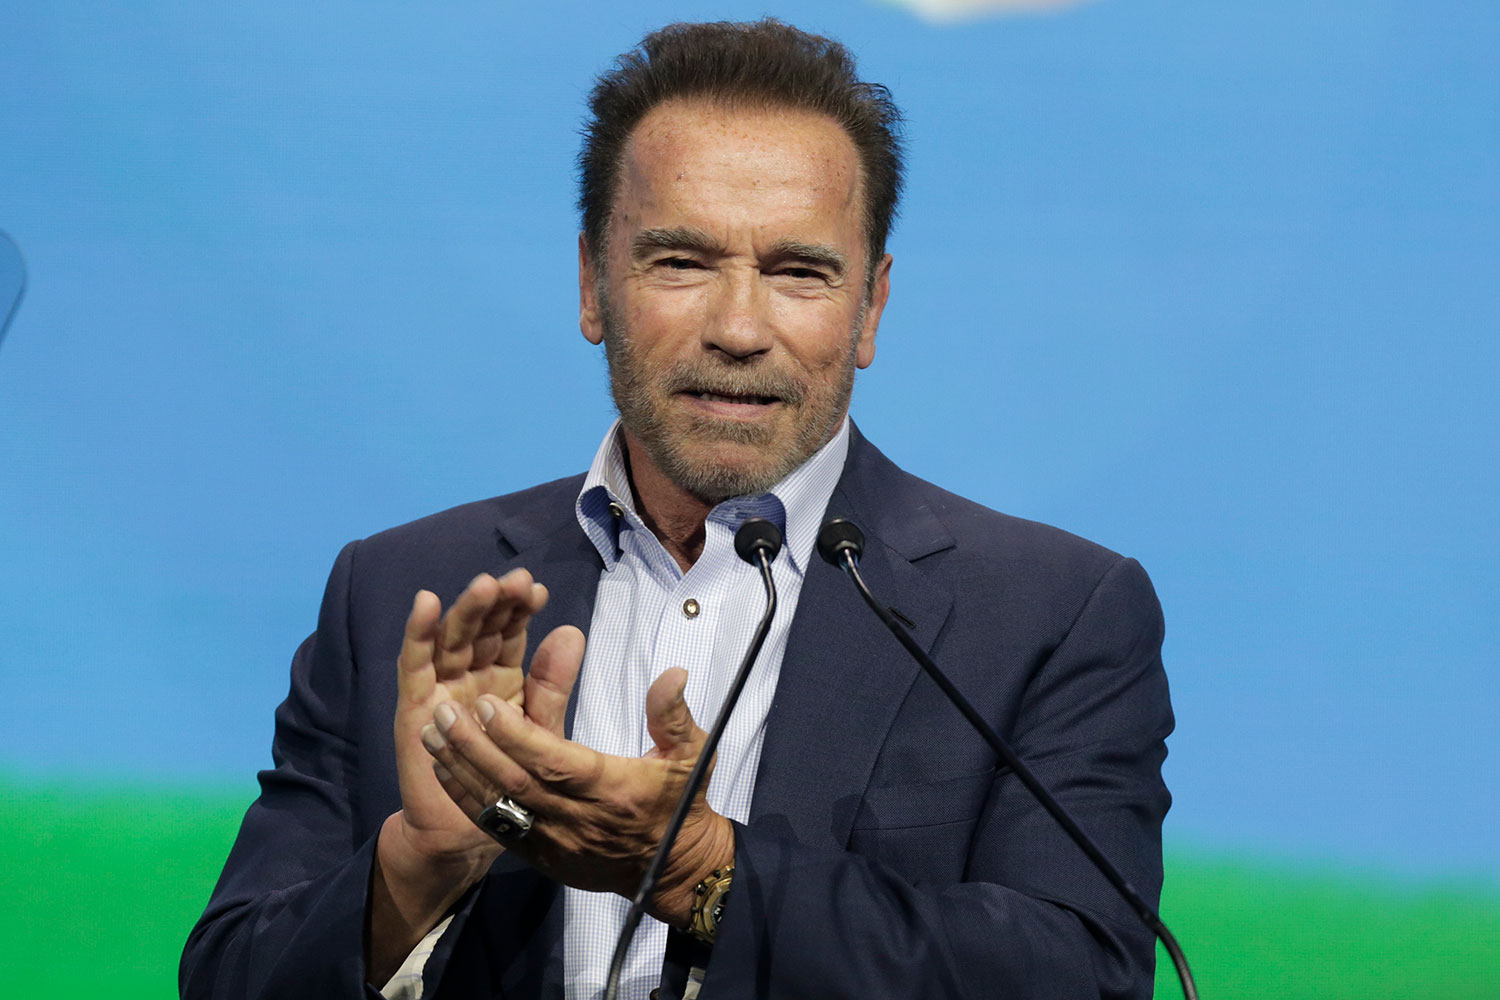 Schwarzenegger med beskjed til russere: Dere blir løyet for